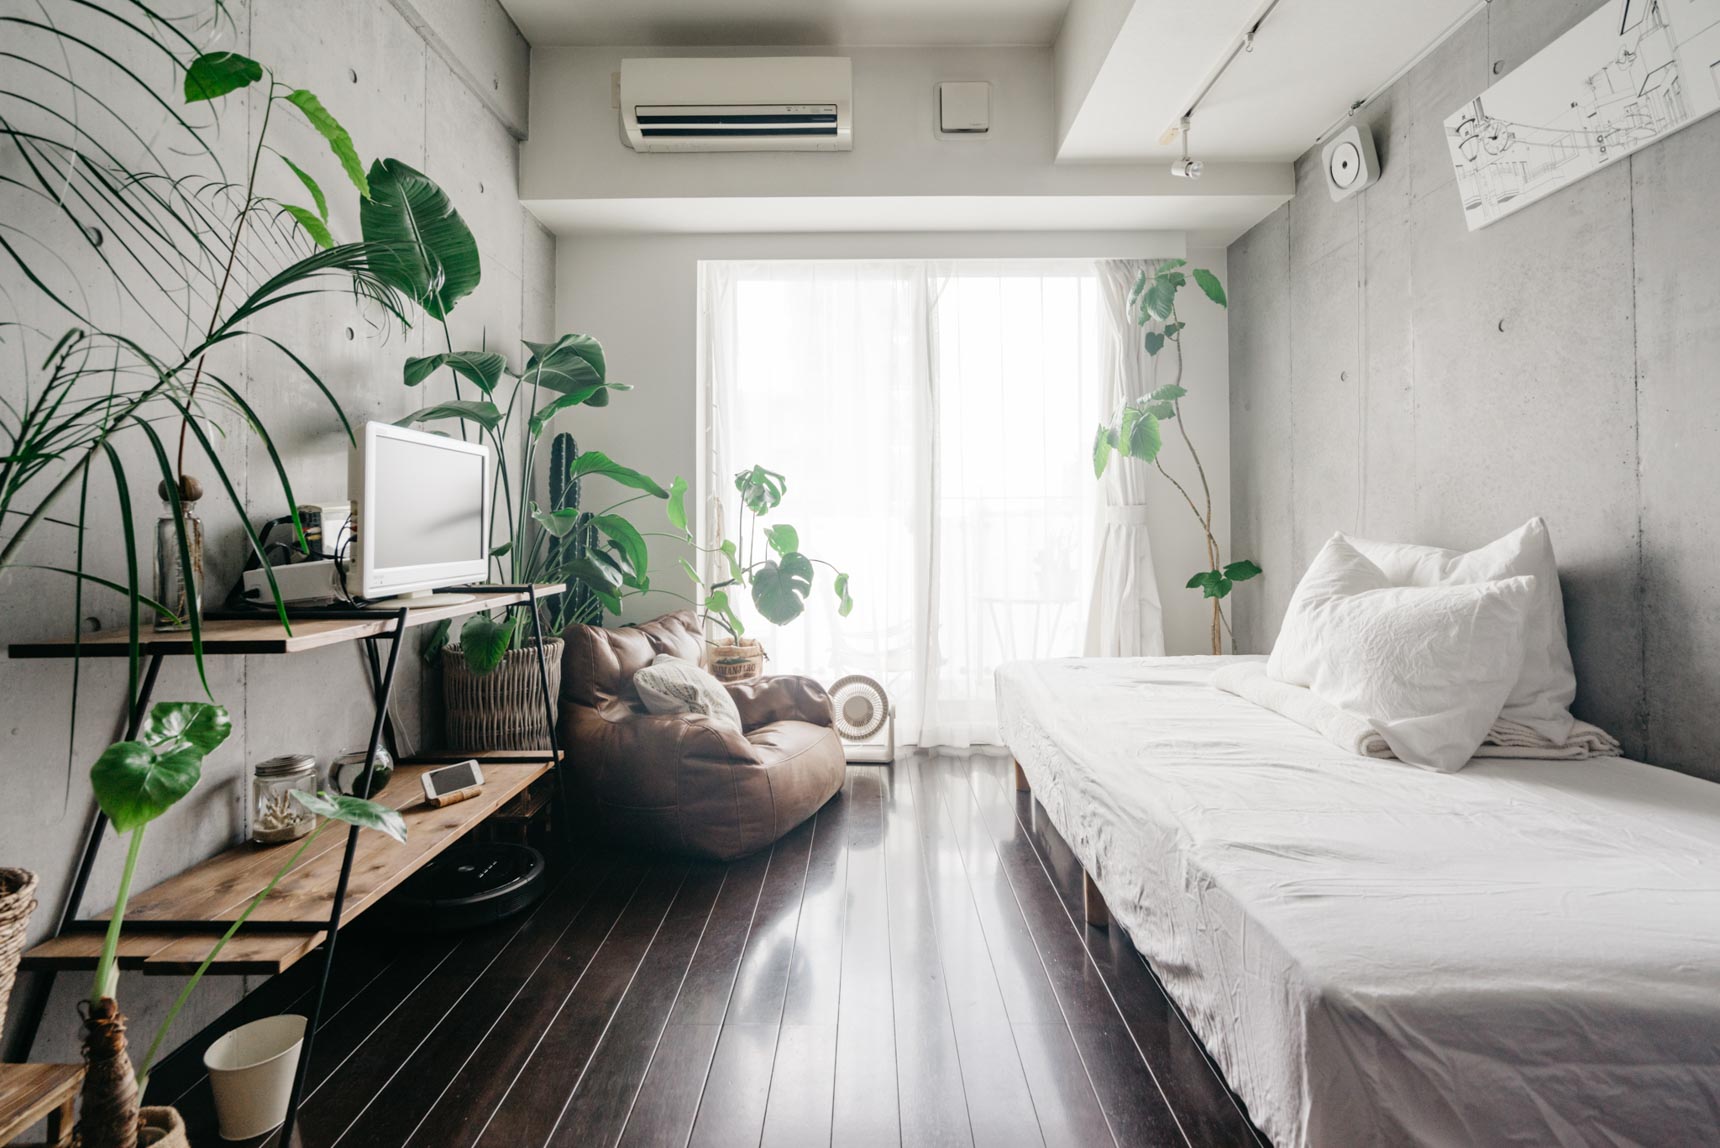 たくさんのグリーンがのびのびと暮らす0.1kgさんのお部屋。植物以外のものは増やさず、家具もお部屋に合わせたコンパクトなものを選んで広々と暮らしていらっしゃいます。